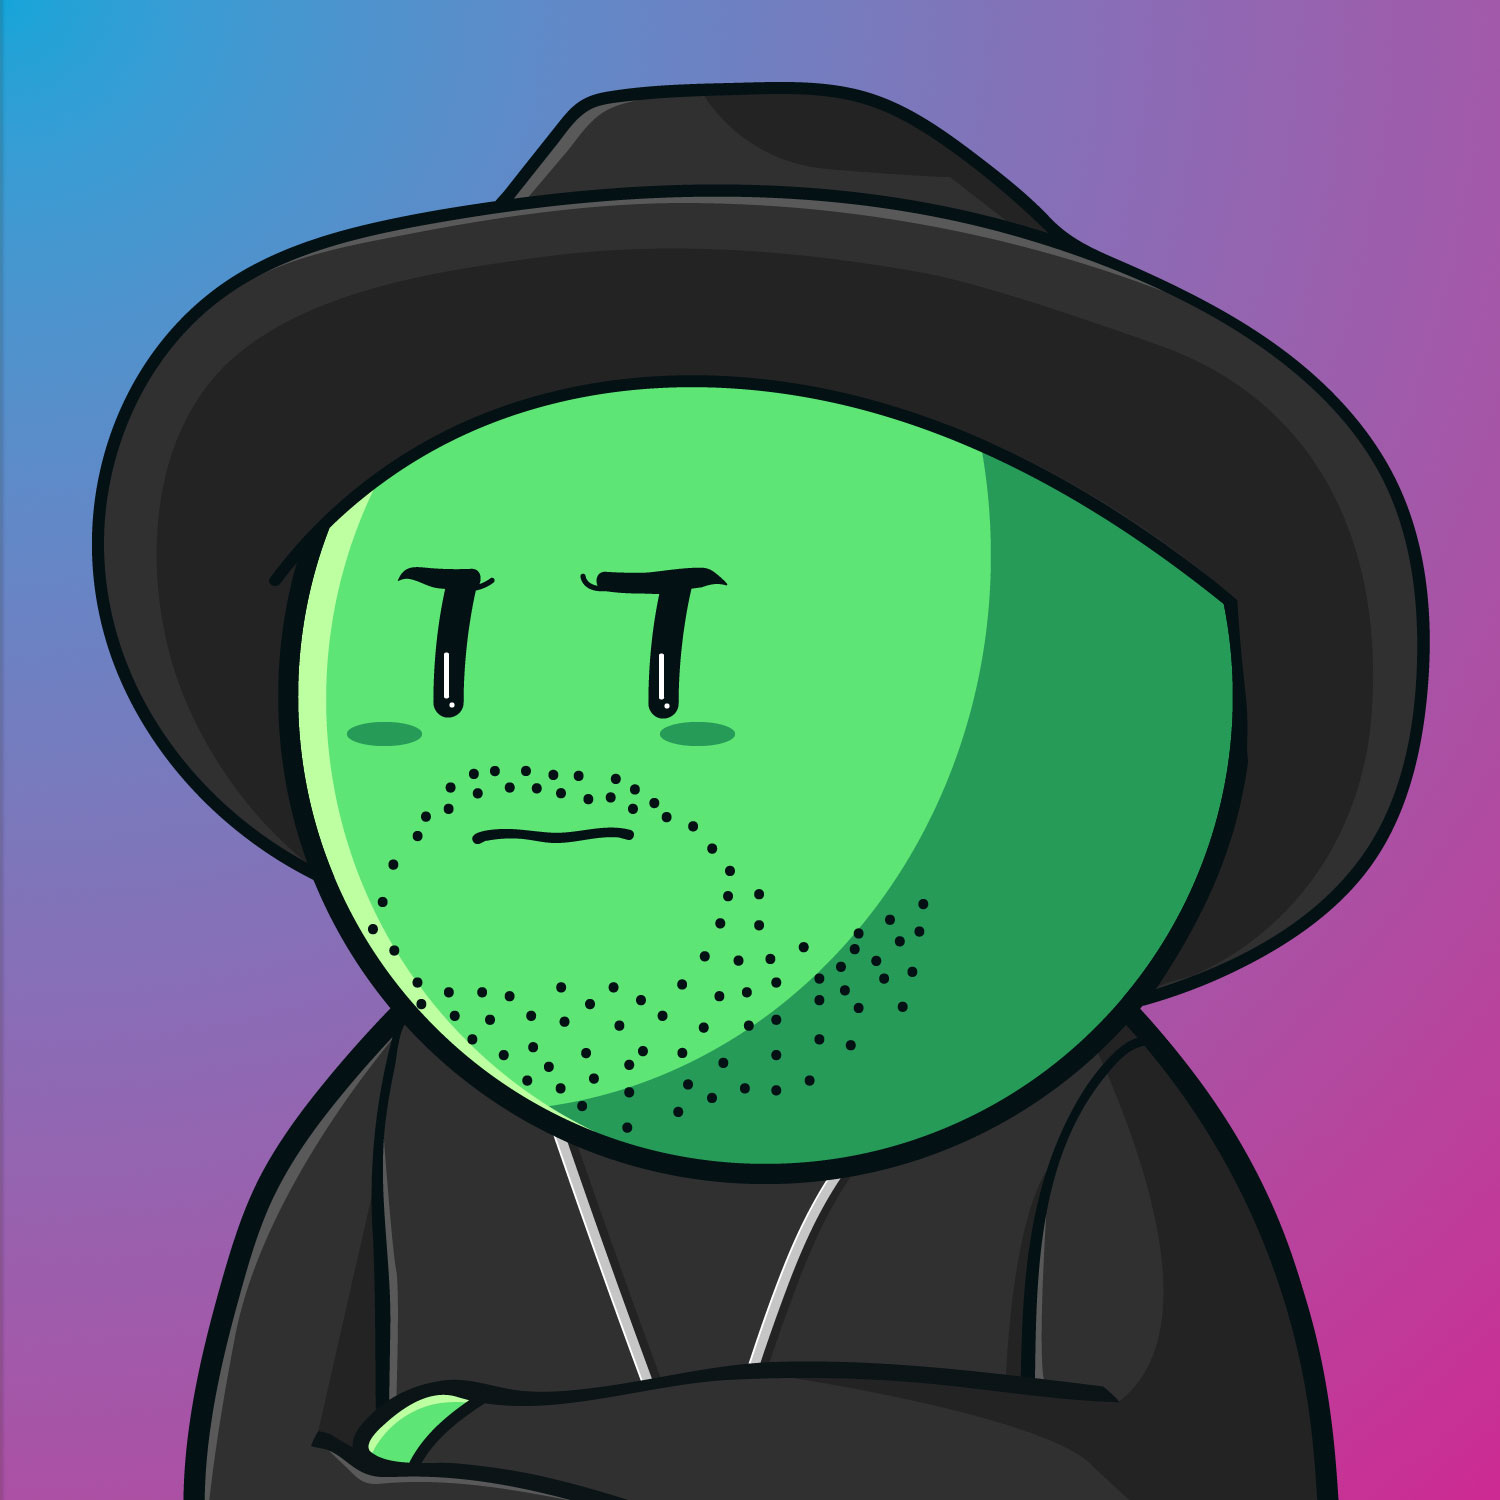 TMP Artist as a Green Pea